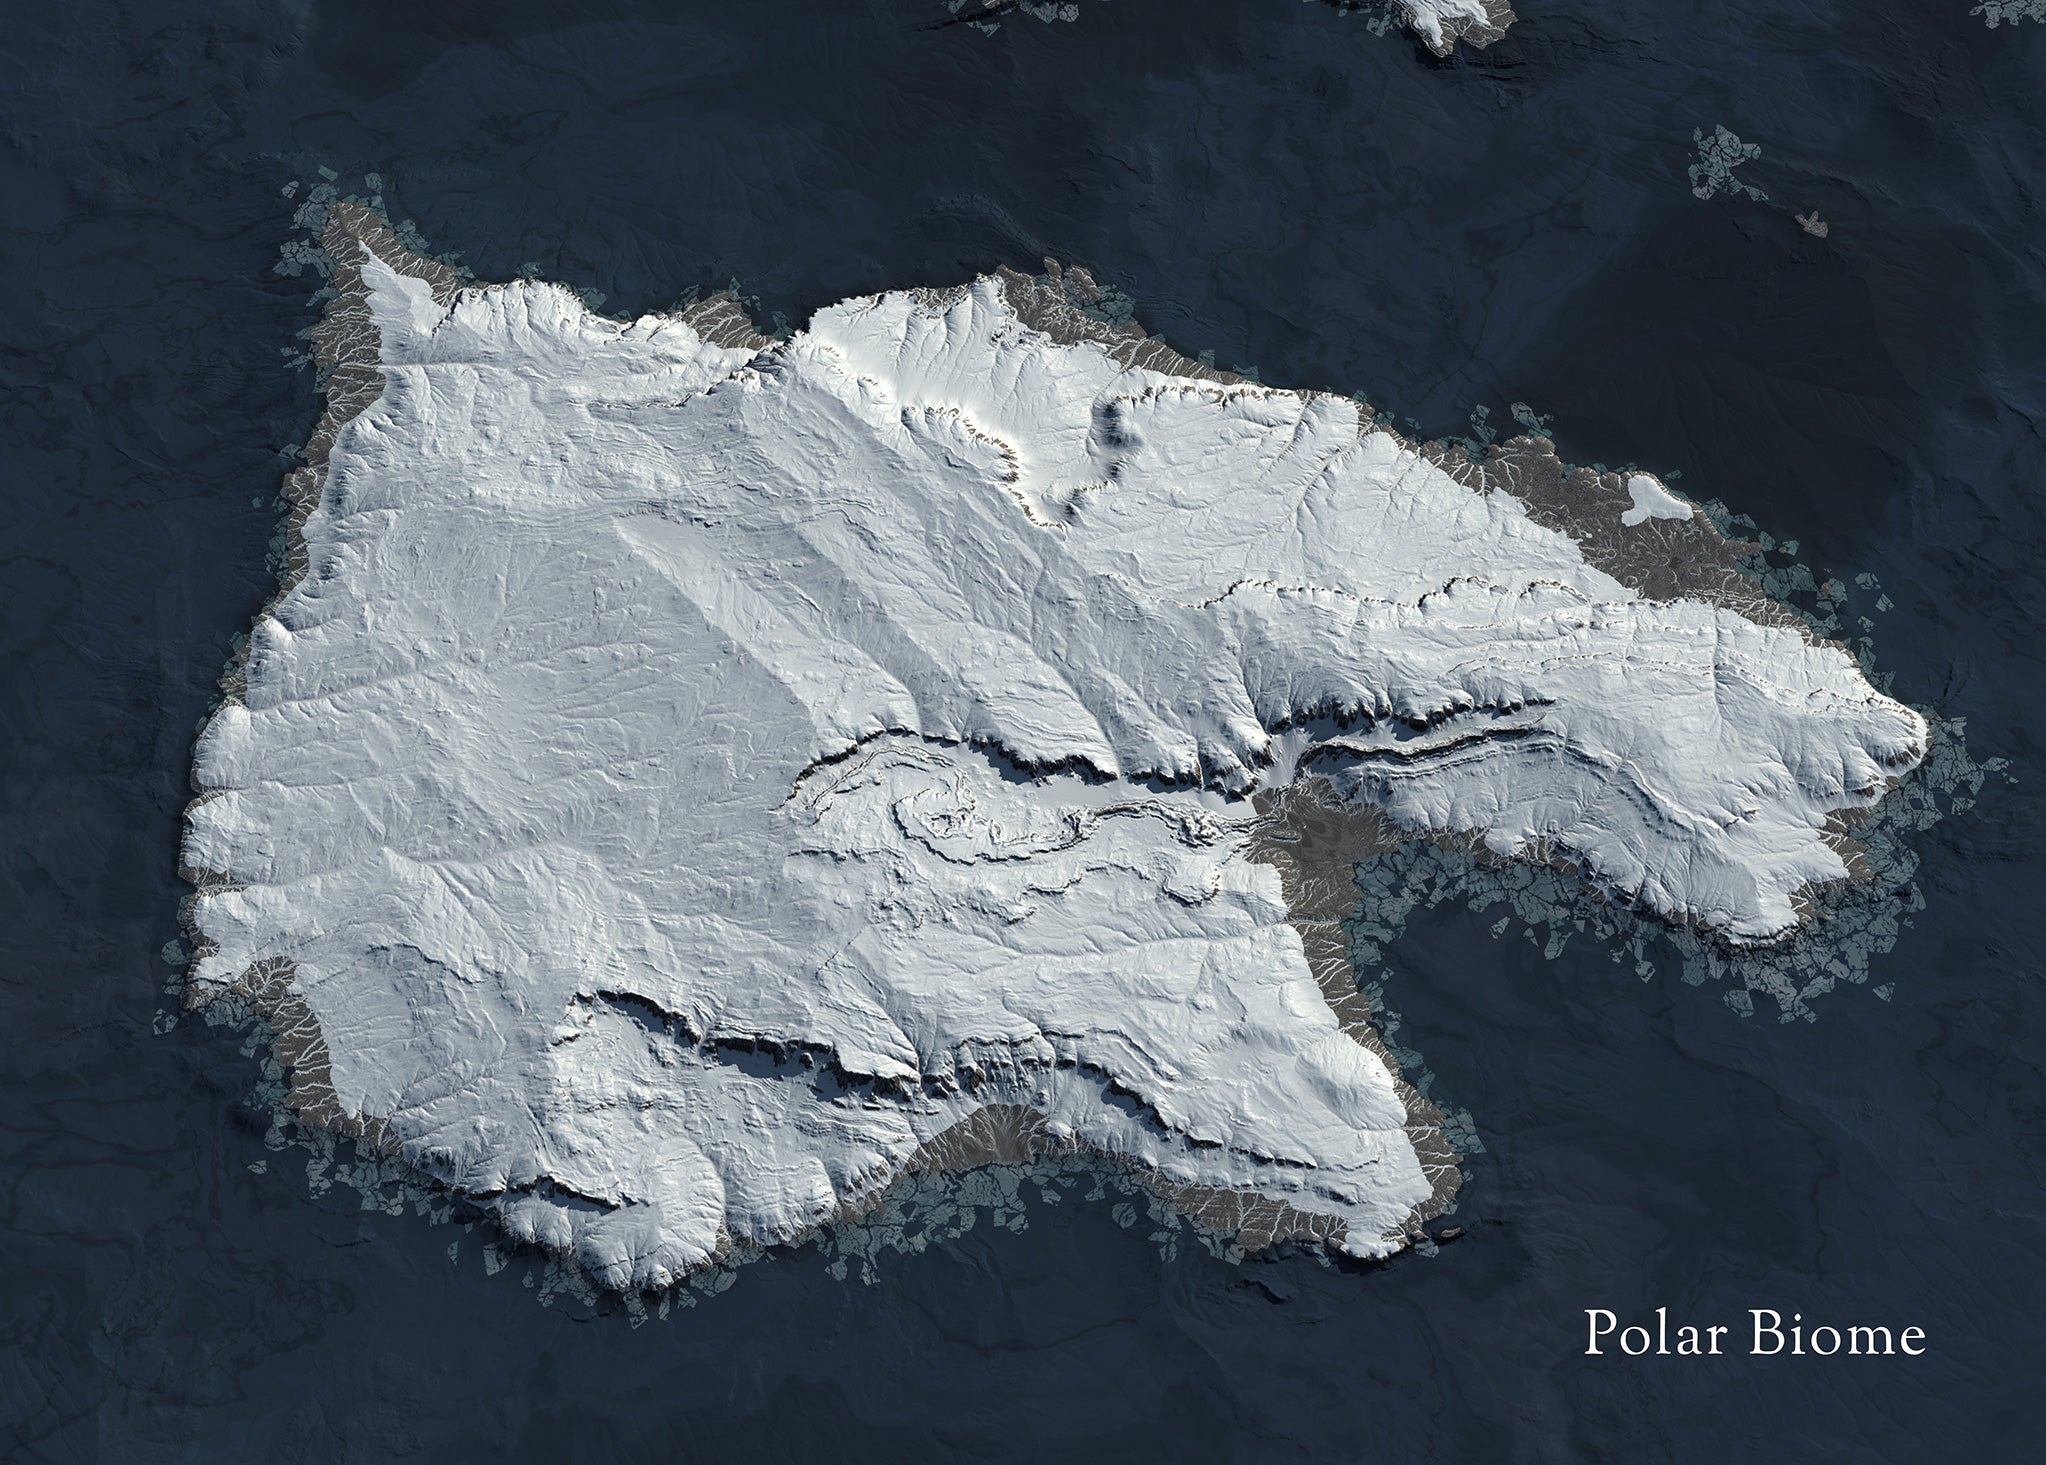 Polar biome terrain for Cpside, by Heledahn